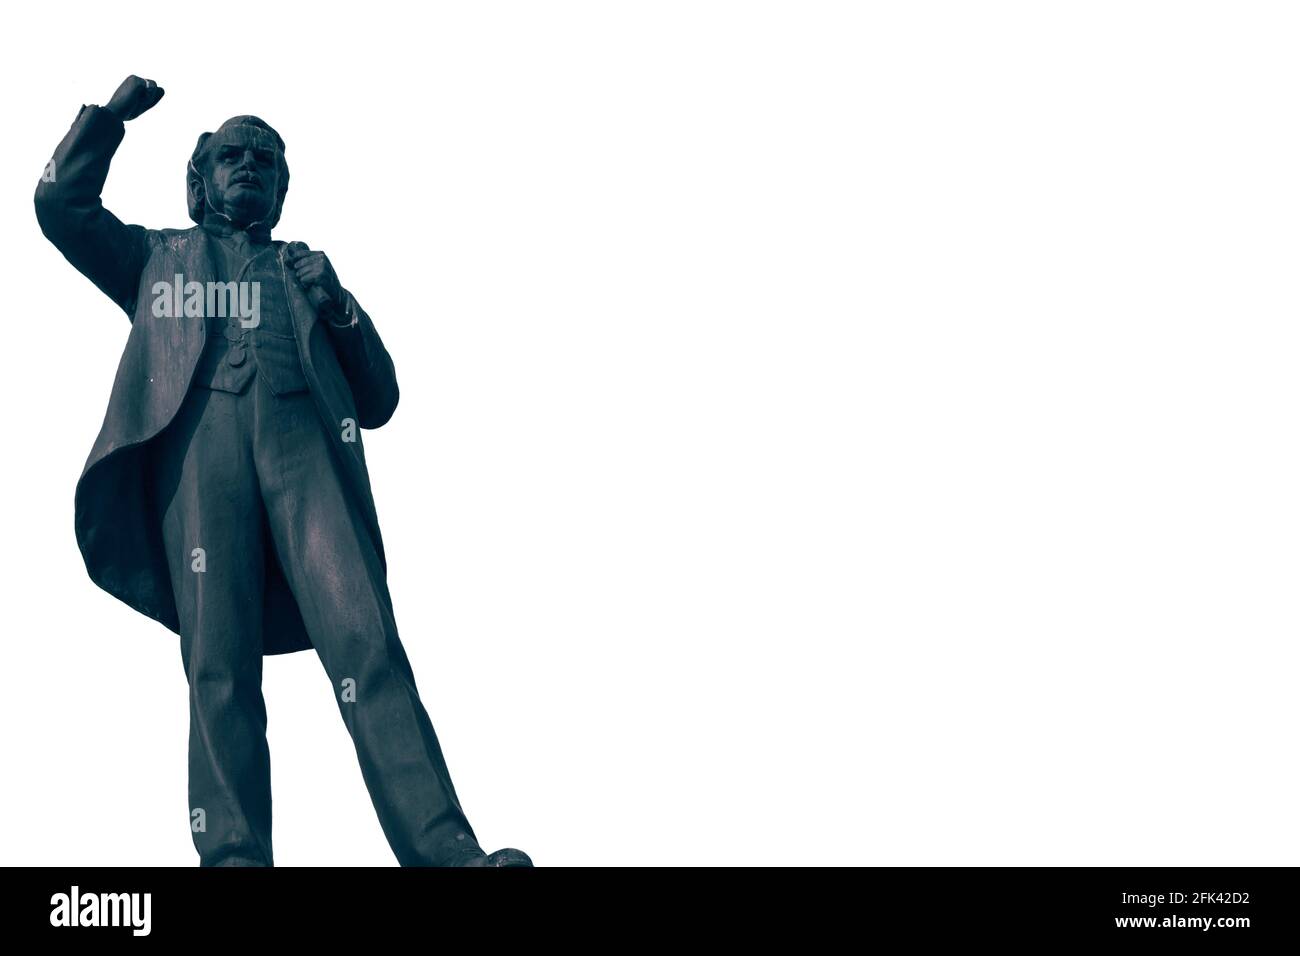 Statue de David Lloyd George, premier ministre du Royaume-Uni entre 1916 et 1922 et membre du Parti libéral. Isolé sur blanc Banque D'Images